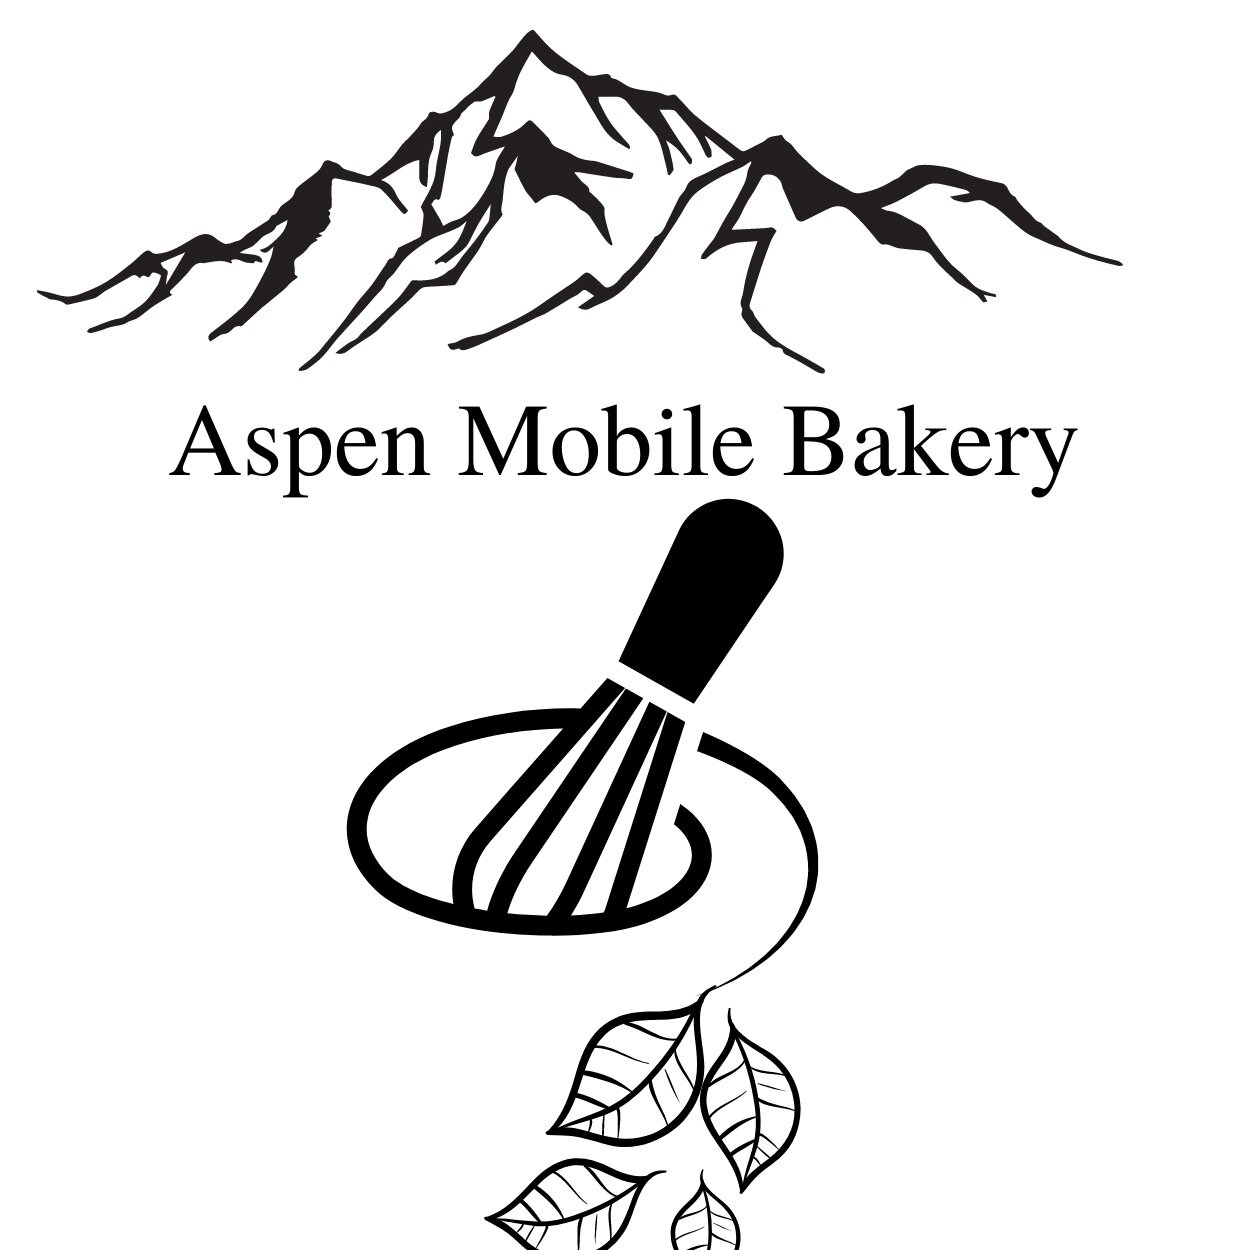 Aspen Mobile Bakery